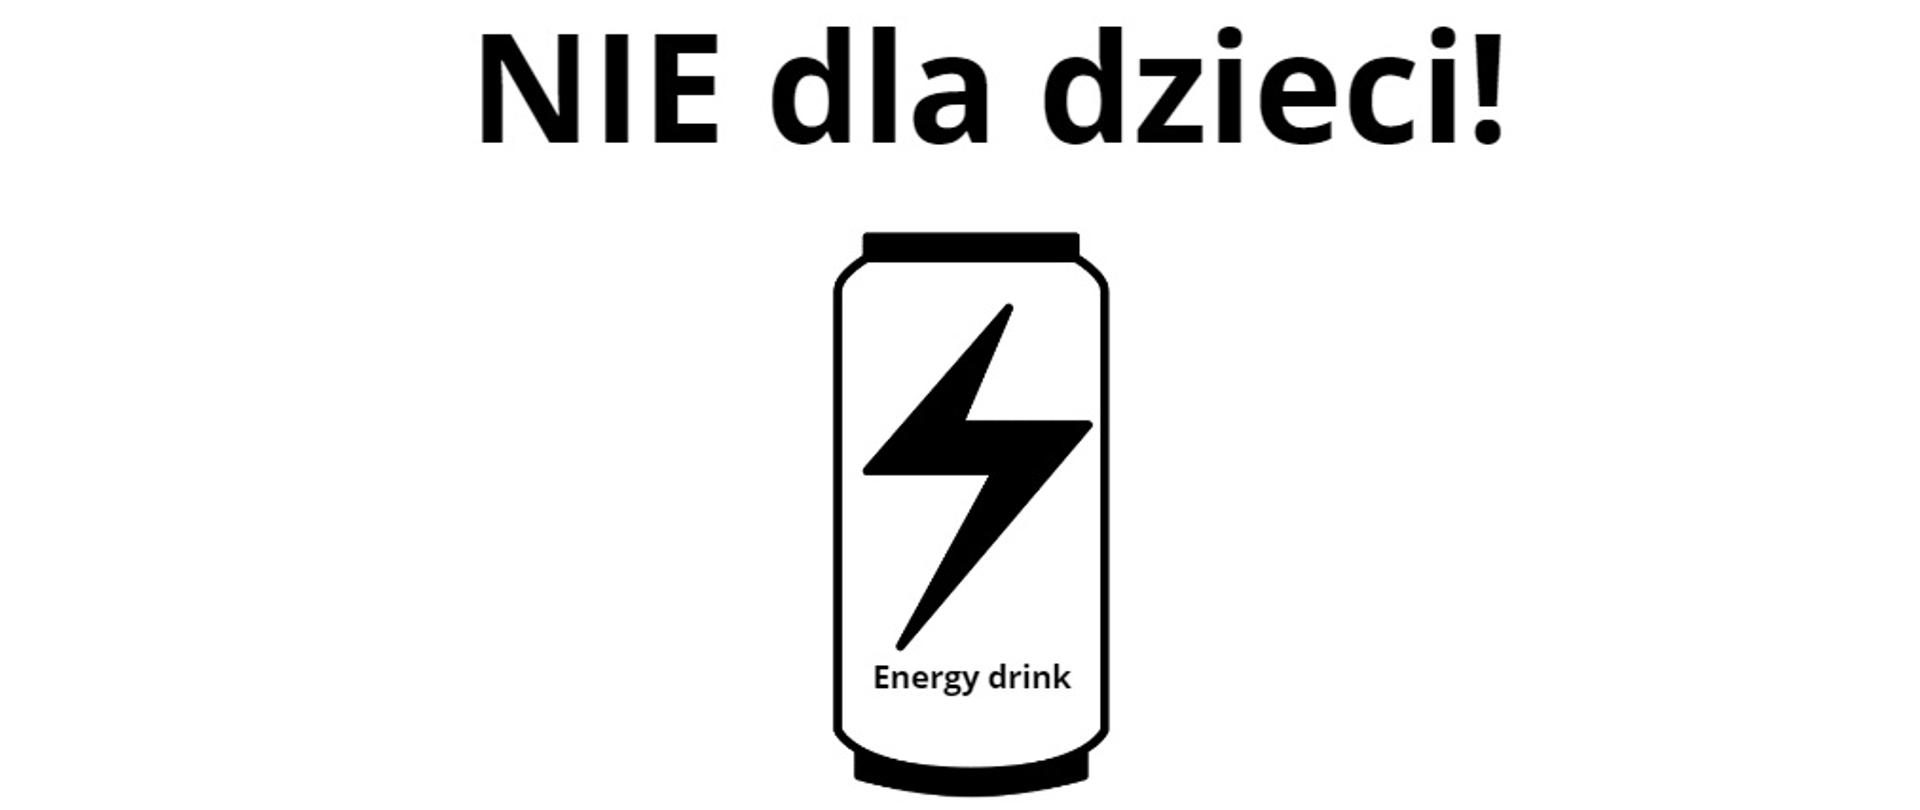 Grafika przedstawia puszkę z błyskawicą i napisem "energy drink", tytuł brzmi "NIE dla dzieci!"